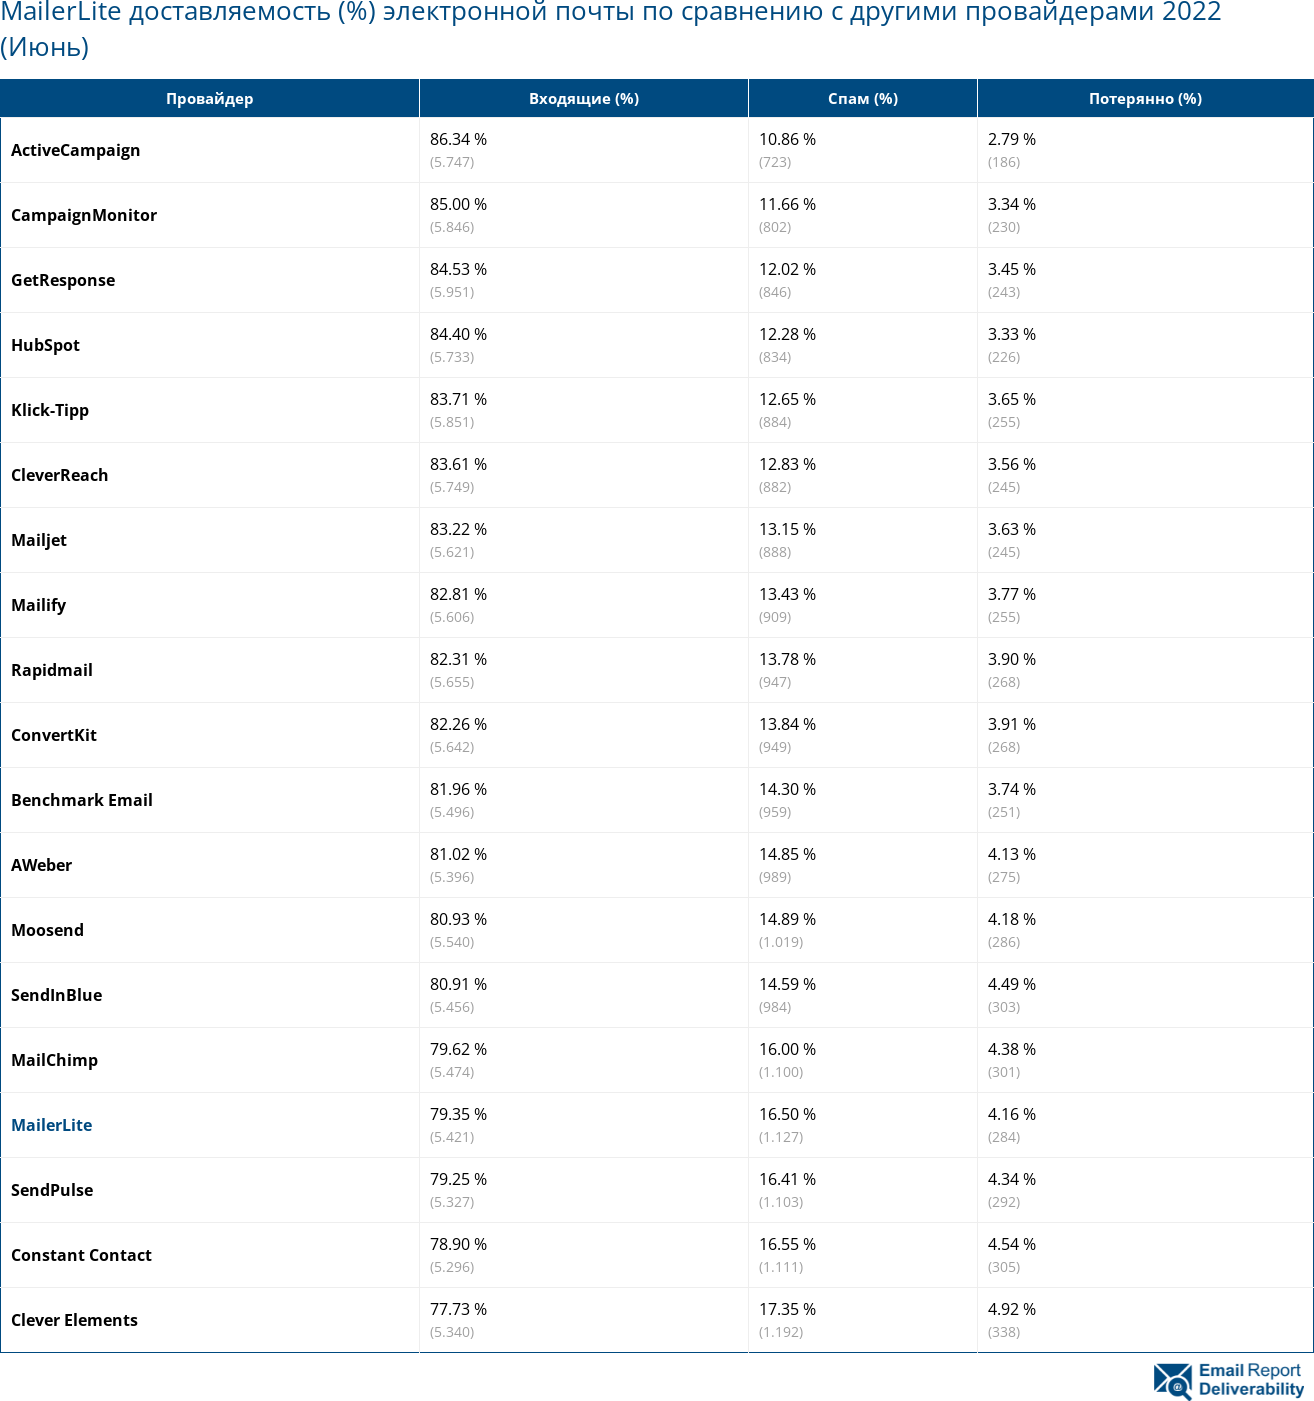 MailerLite доставляемость (%) электронной почты по сравнению с другими провайдерами 2022 (Июнь)